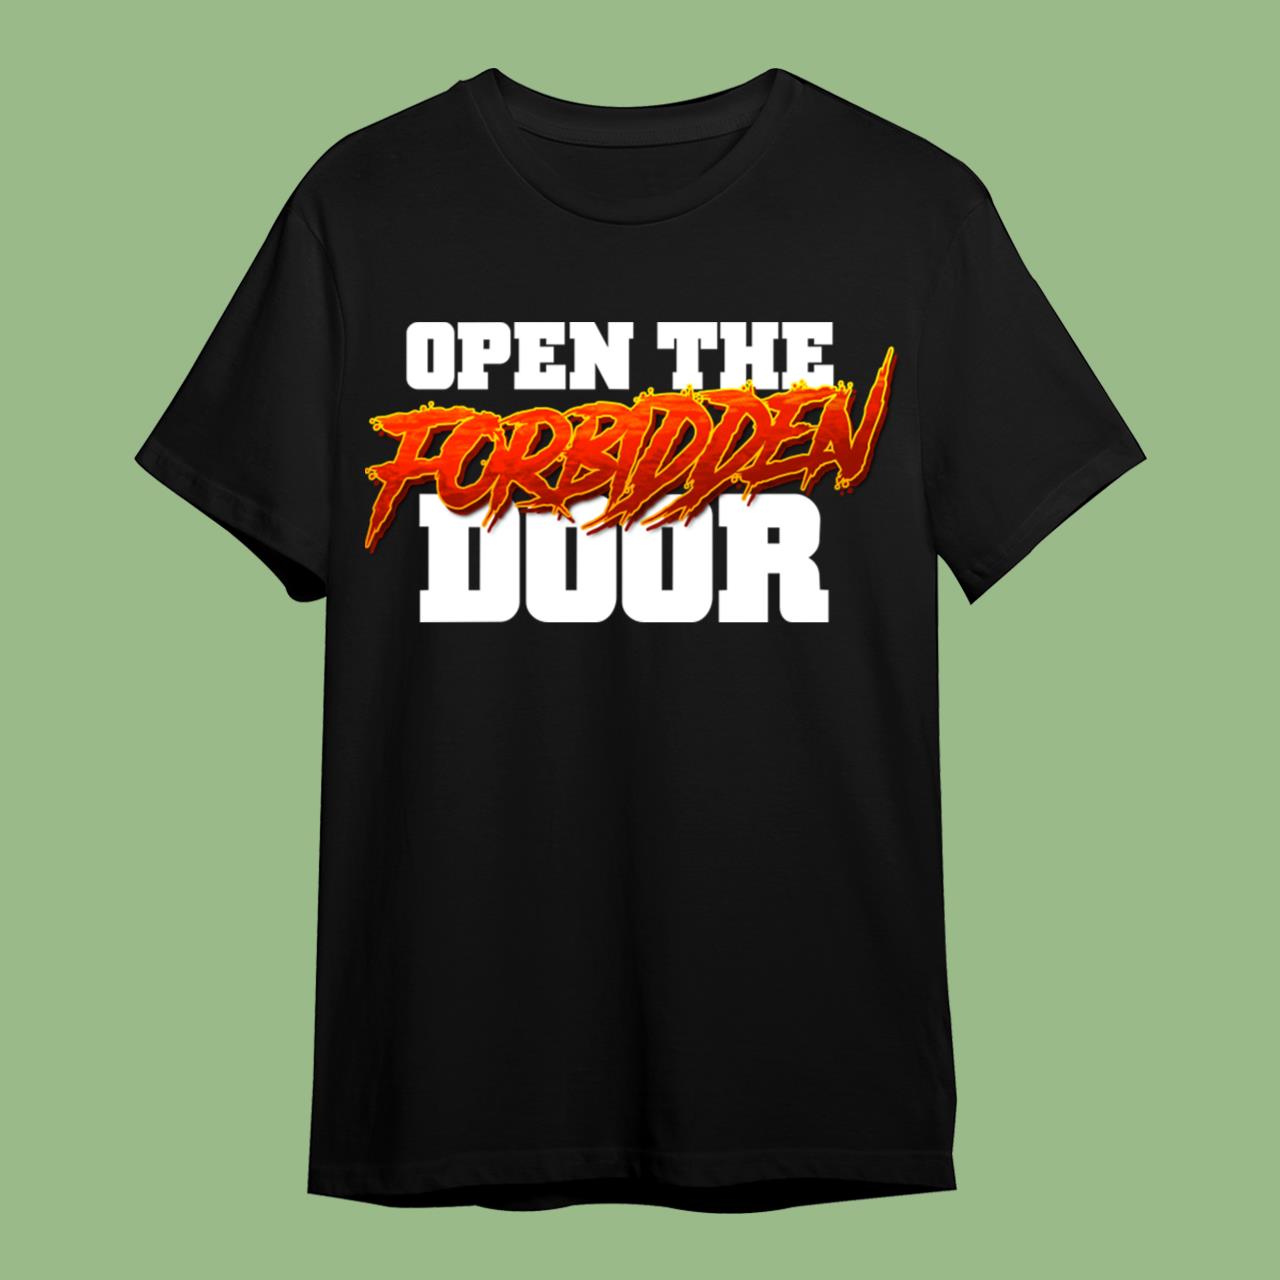 Open The Forbidden Door!!! T-Shirt